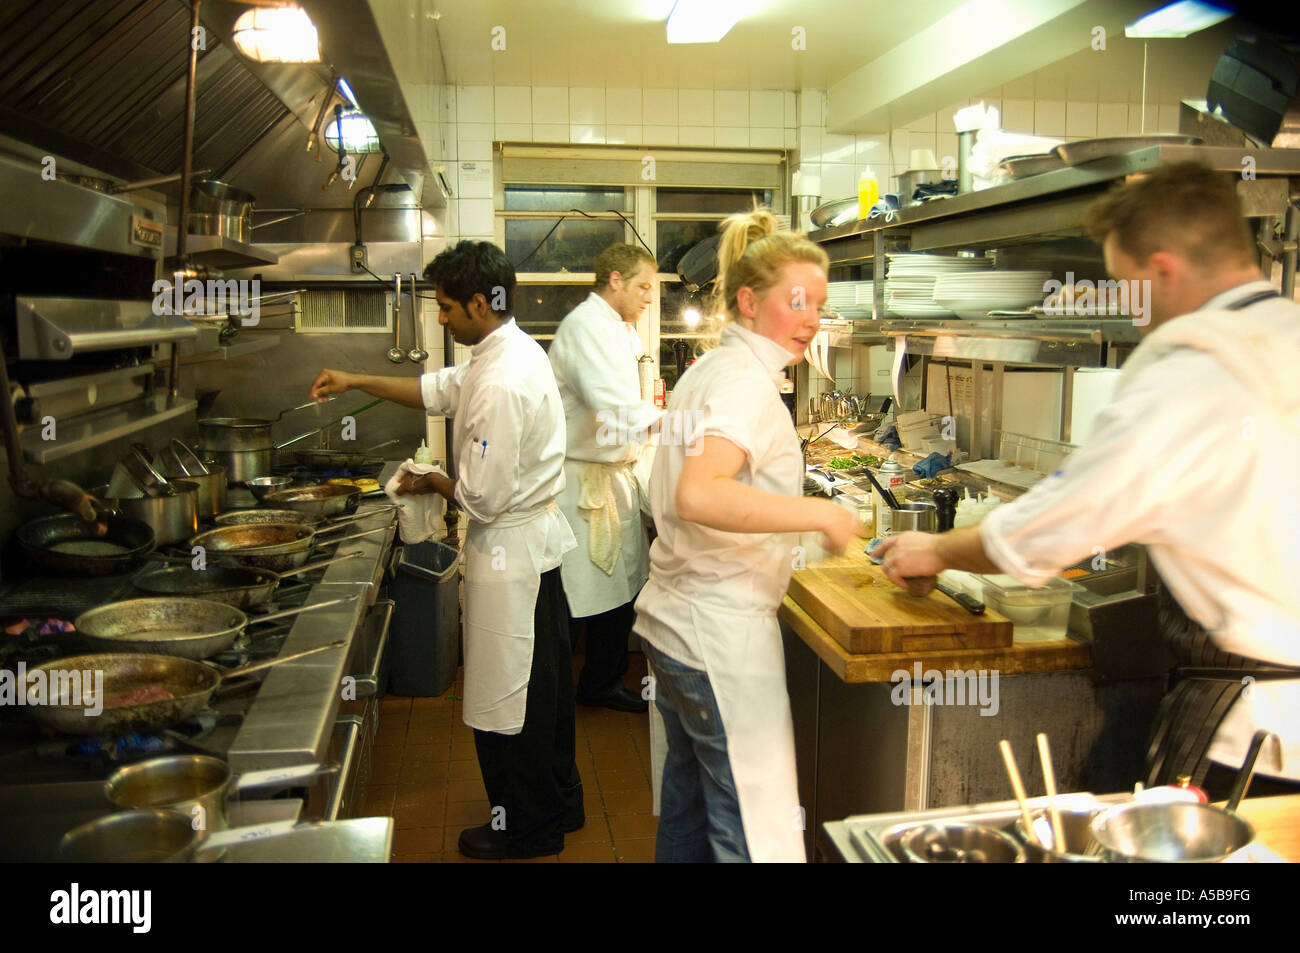 team-of-restaurant-kitchen-staff-busy-at-work-A5B9FG.jpg